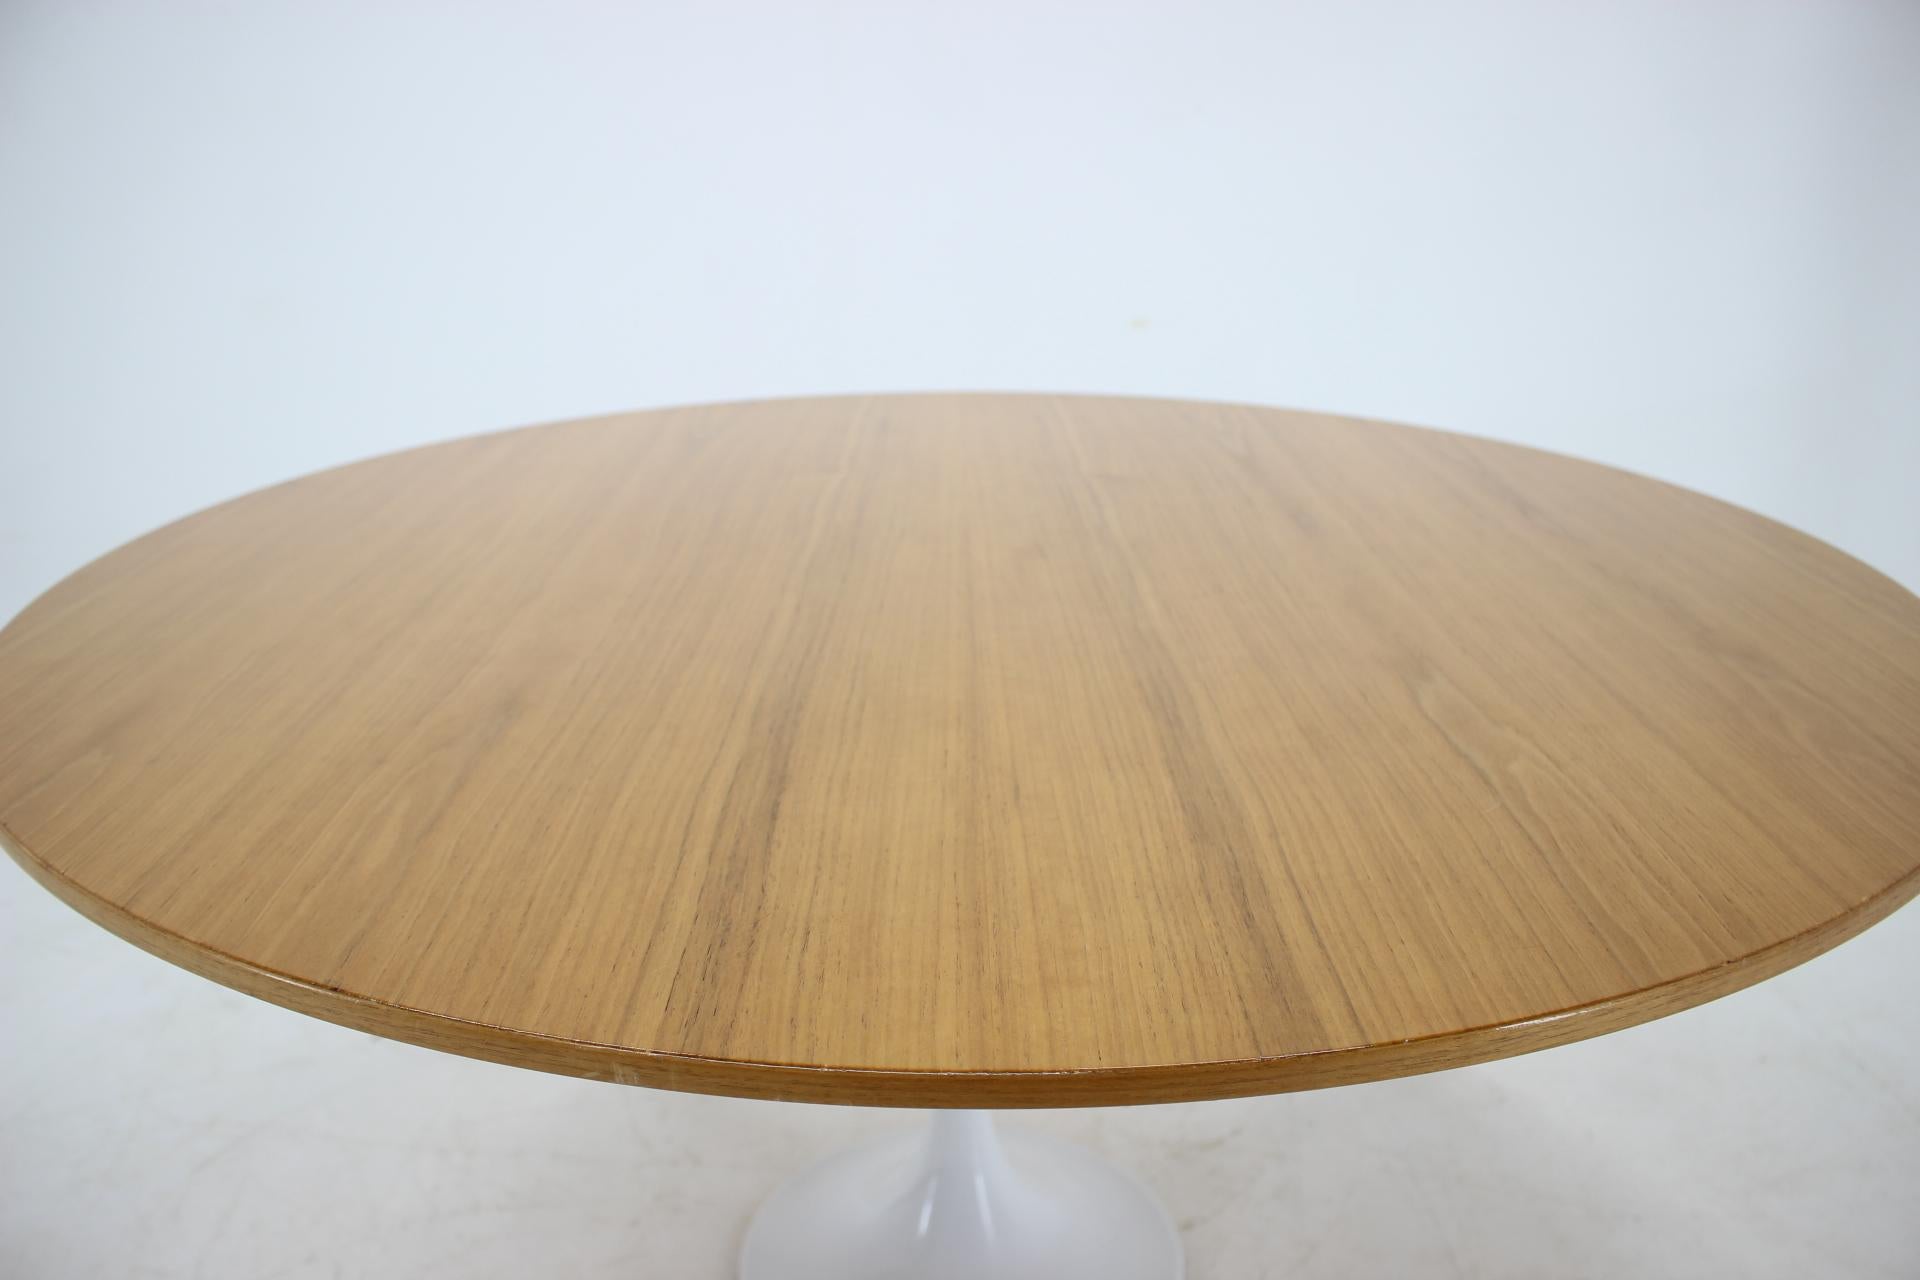 Swiss Midcentury Tulip Table in Style of Eero Saarinen For Sale